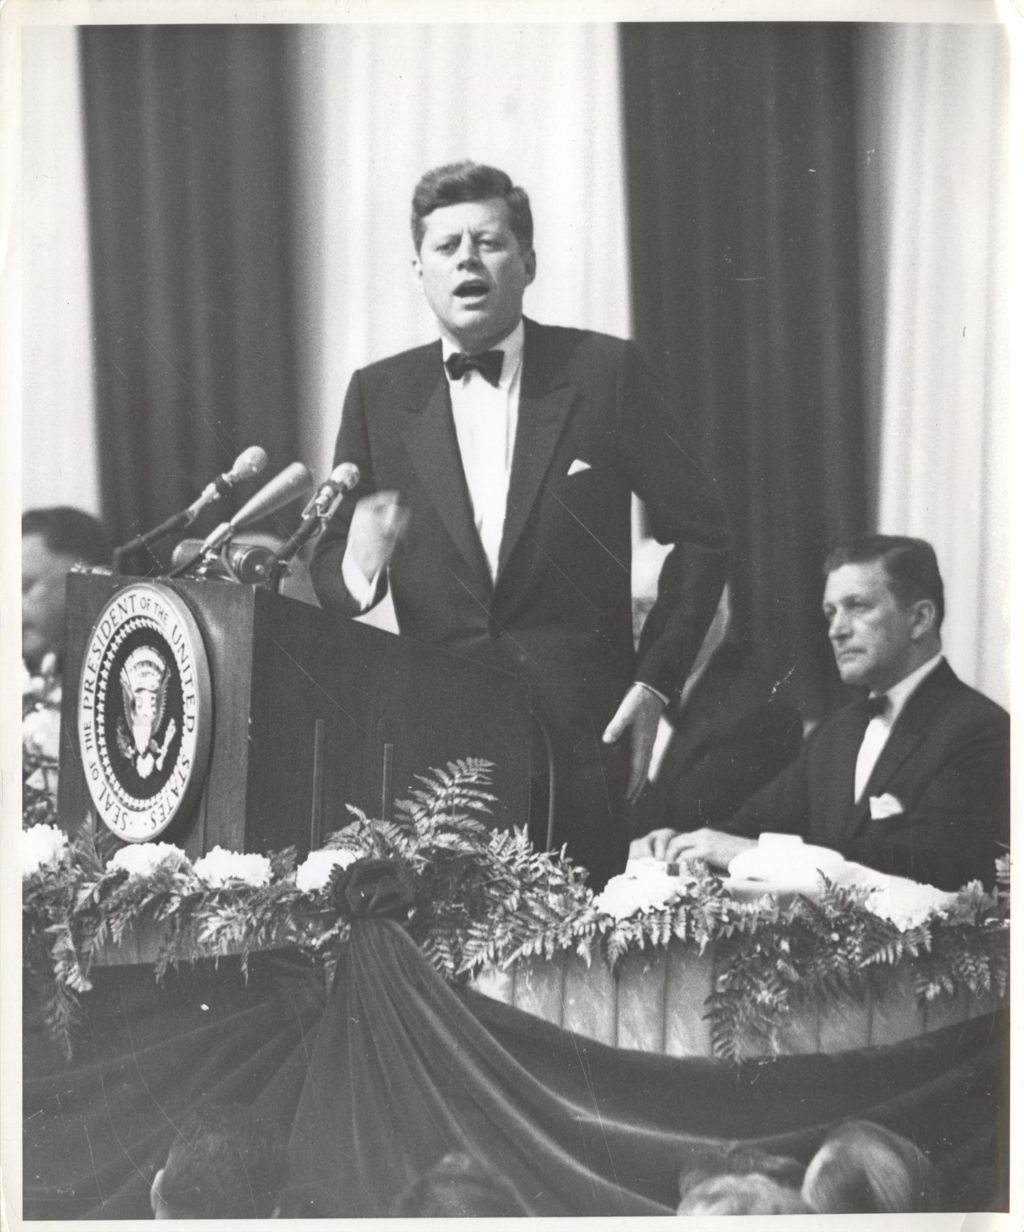 President John F. Kennedy speaking at Democratic fundraising dinner